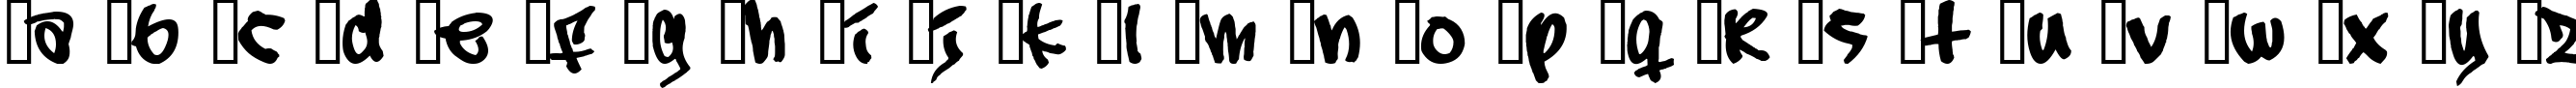 Пример написания английского алфавита шрифтом Subway